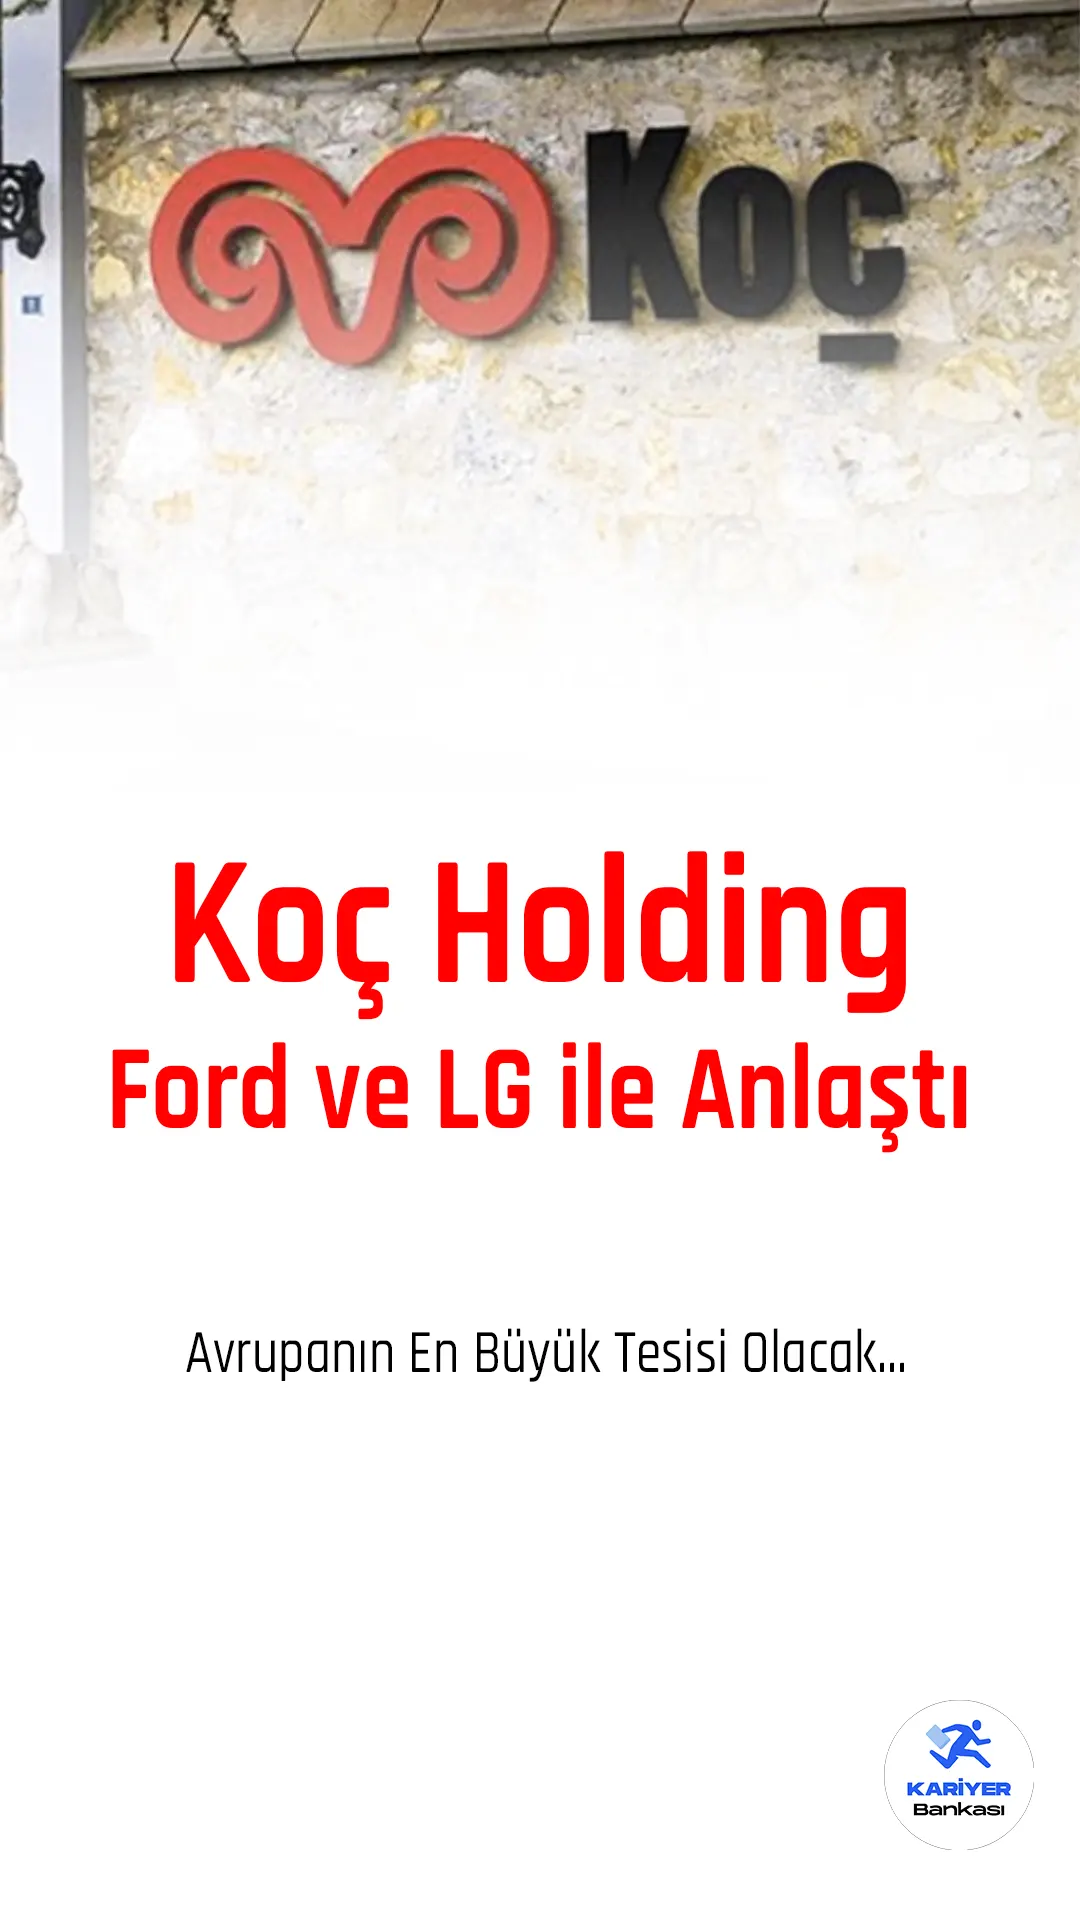 Koç Holding, Ford Motor Company ve LG Energy Solution, Ankara'da bir batarya hücresi üretim tesisi kurmak için bağlayıcı olmayan bir mutabakat anlaşması imzaladı.